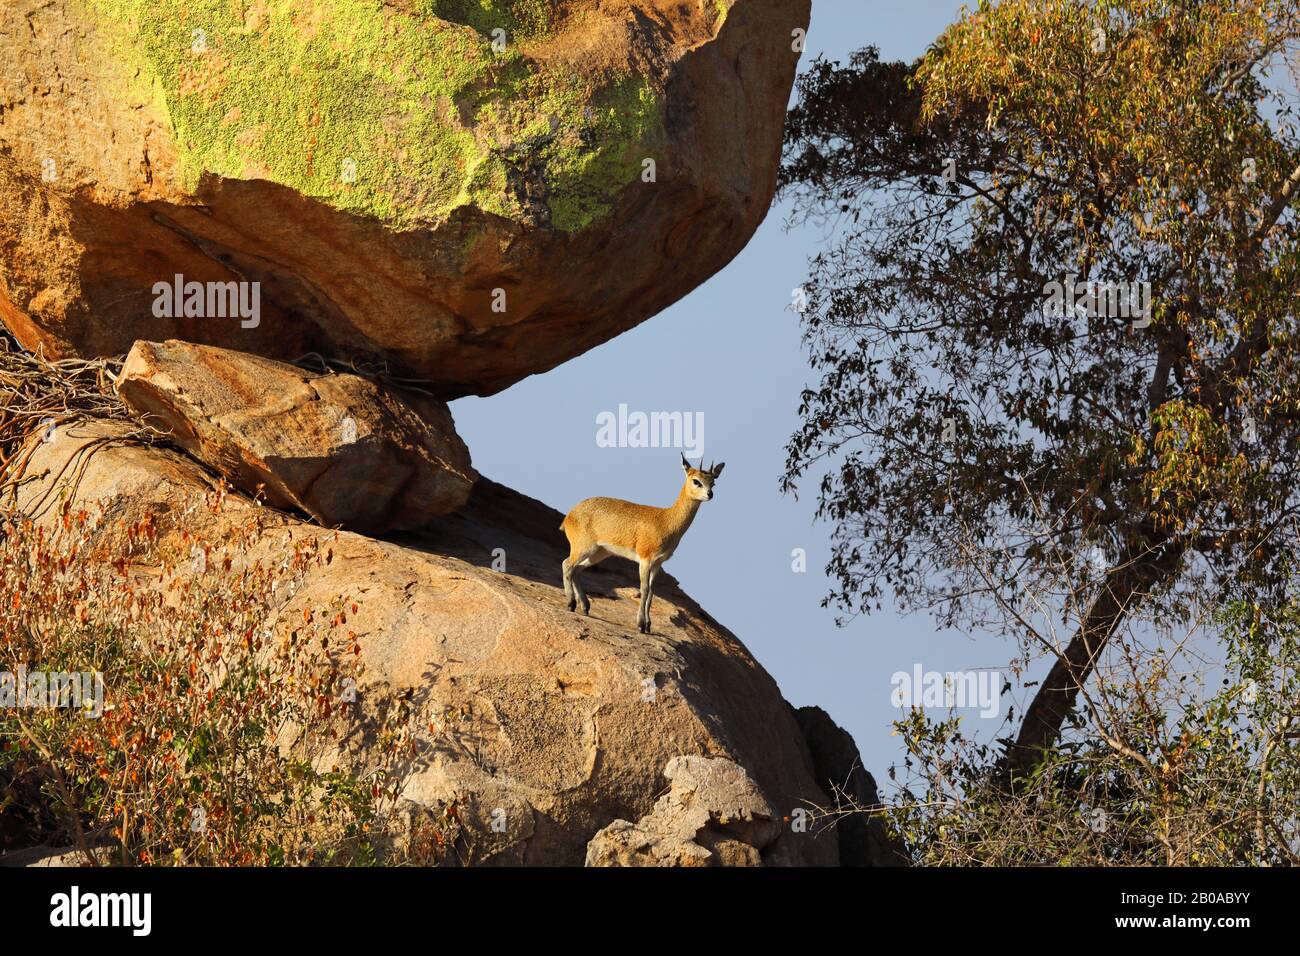 Klipspringer (Oreotragus oreotragus), homme debout sur un rocher de granit, vue latérale, Afrique du Sud, Lowveld, Krueger National Park Banque D'Images